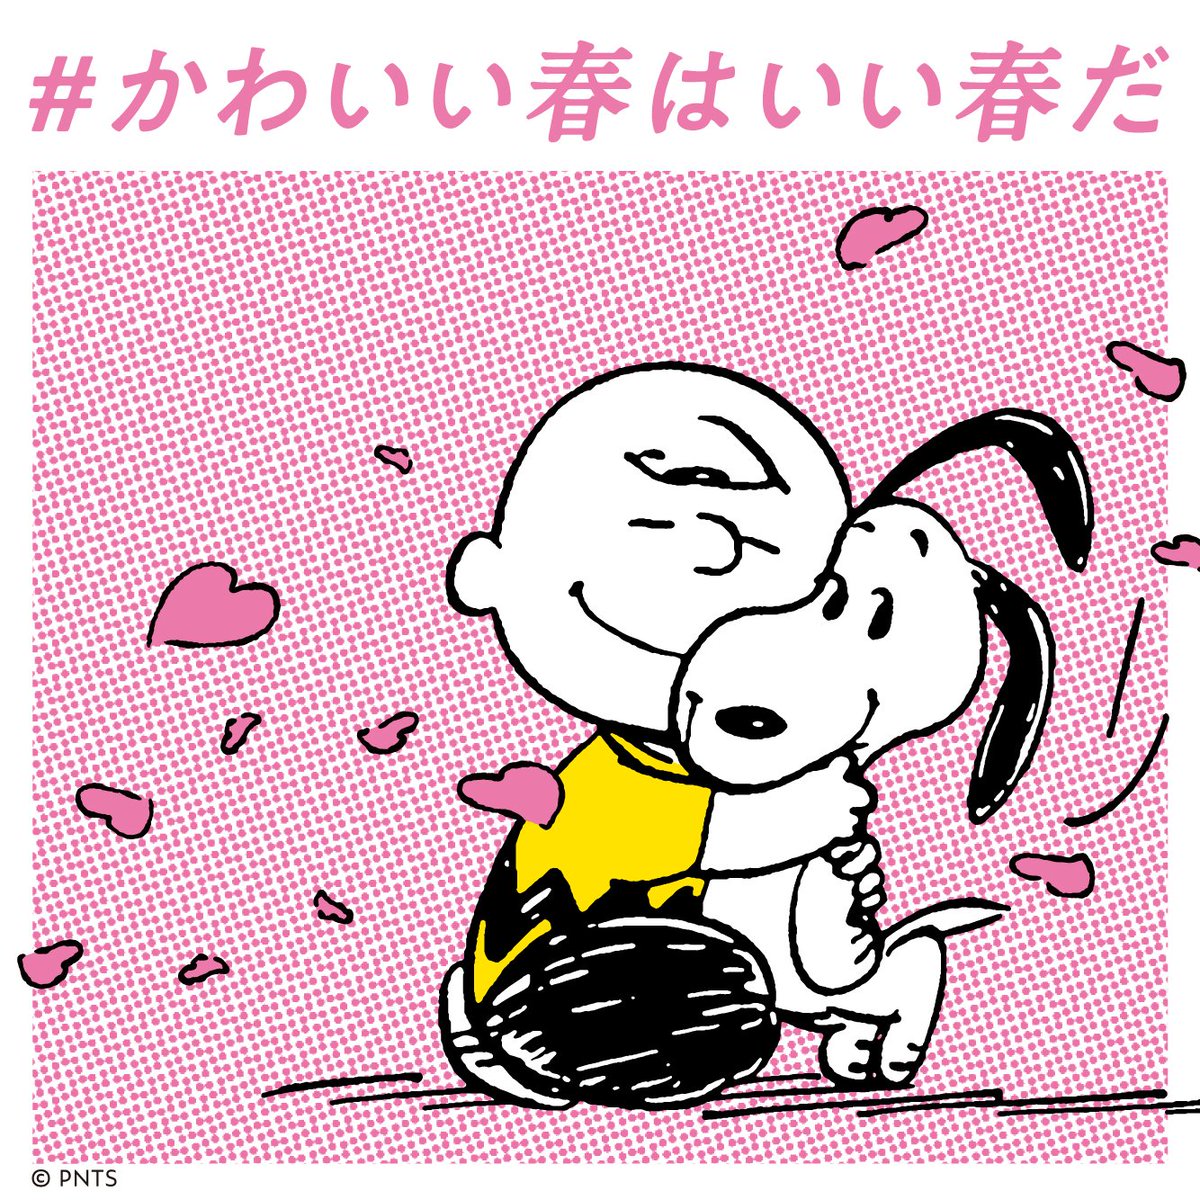 Snoopy Museum Tokyo スヌーピーミュージアムでは かわいい春はいい春だ キャンペーンを実施中 チケットカウンターで かわいい春 と言ってチケットを購入すると 前売り料金で入場できます ミュージアム写真で埋めつくされた東急東横線1車両も 3月26